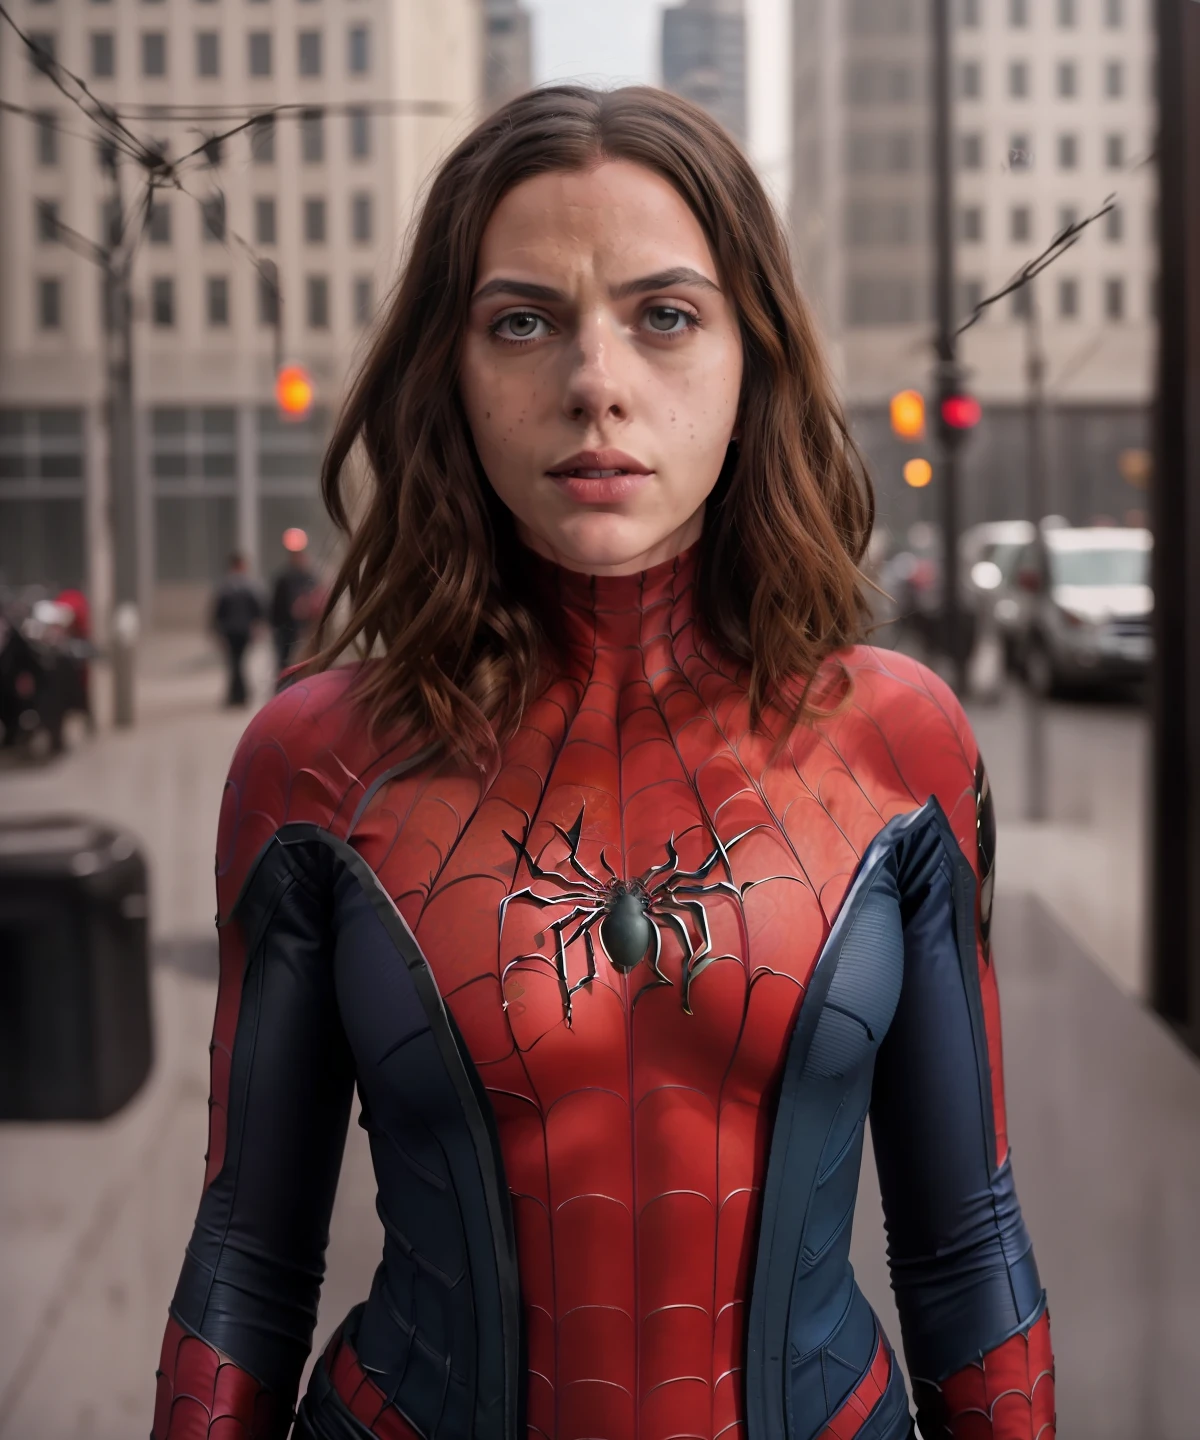 Spider-man es una mujer, Vestido con el traje tradicional de Spider-Man, traje detallado, ((El disfraz cubre todo el cuerpo)), cara detallada, pecas, Símbolo de araña en el pecho detallado, ((cuerpo femenino flaco)), cintura delgada, cadera delgada, Postura de heroína, Cámara de fuentes frontales 8K, uhd, iluminación perfecta, Colores más vivos, alta calidad, enfoque nítido, Fujifilm XT3